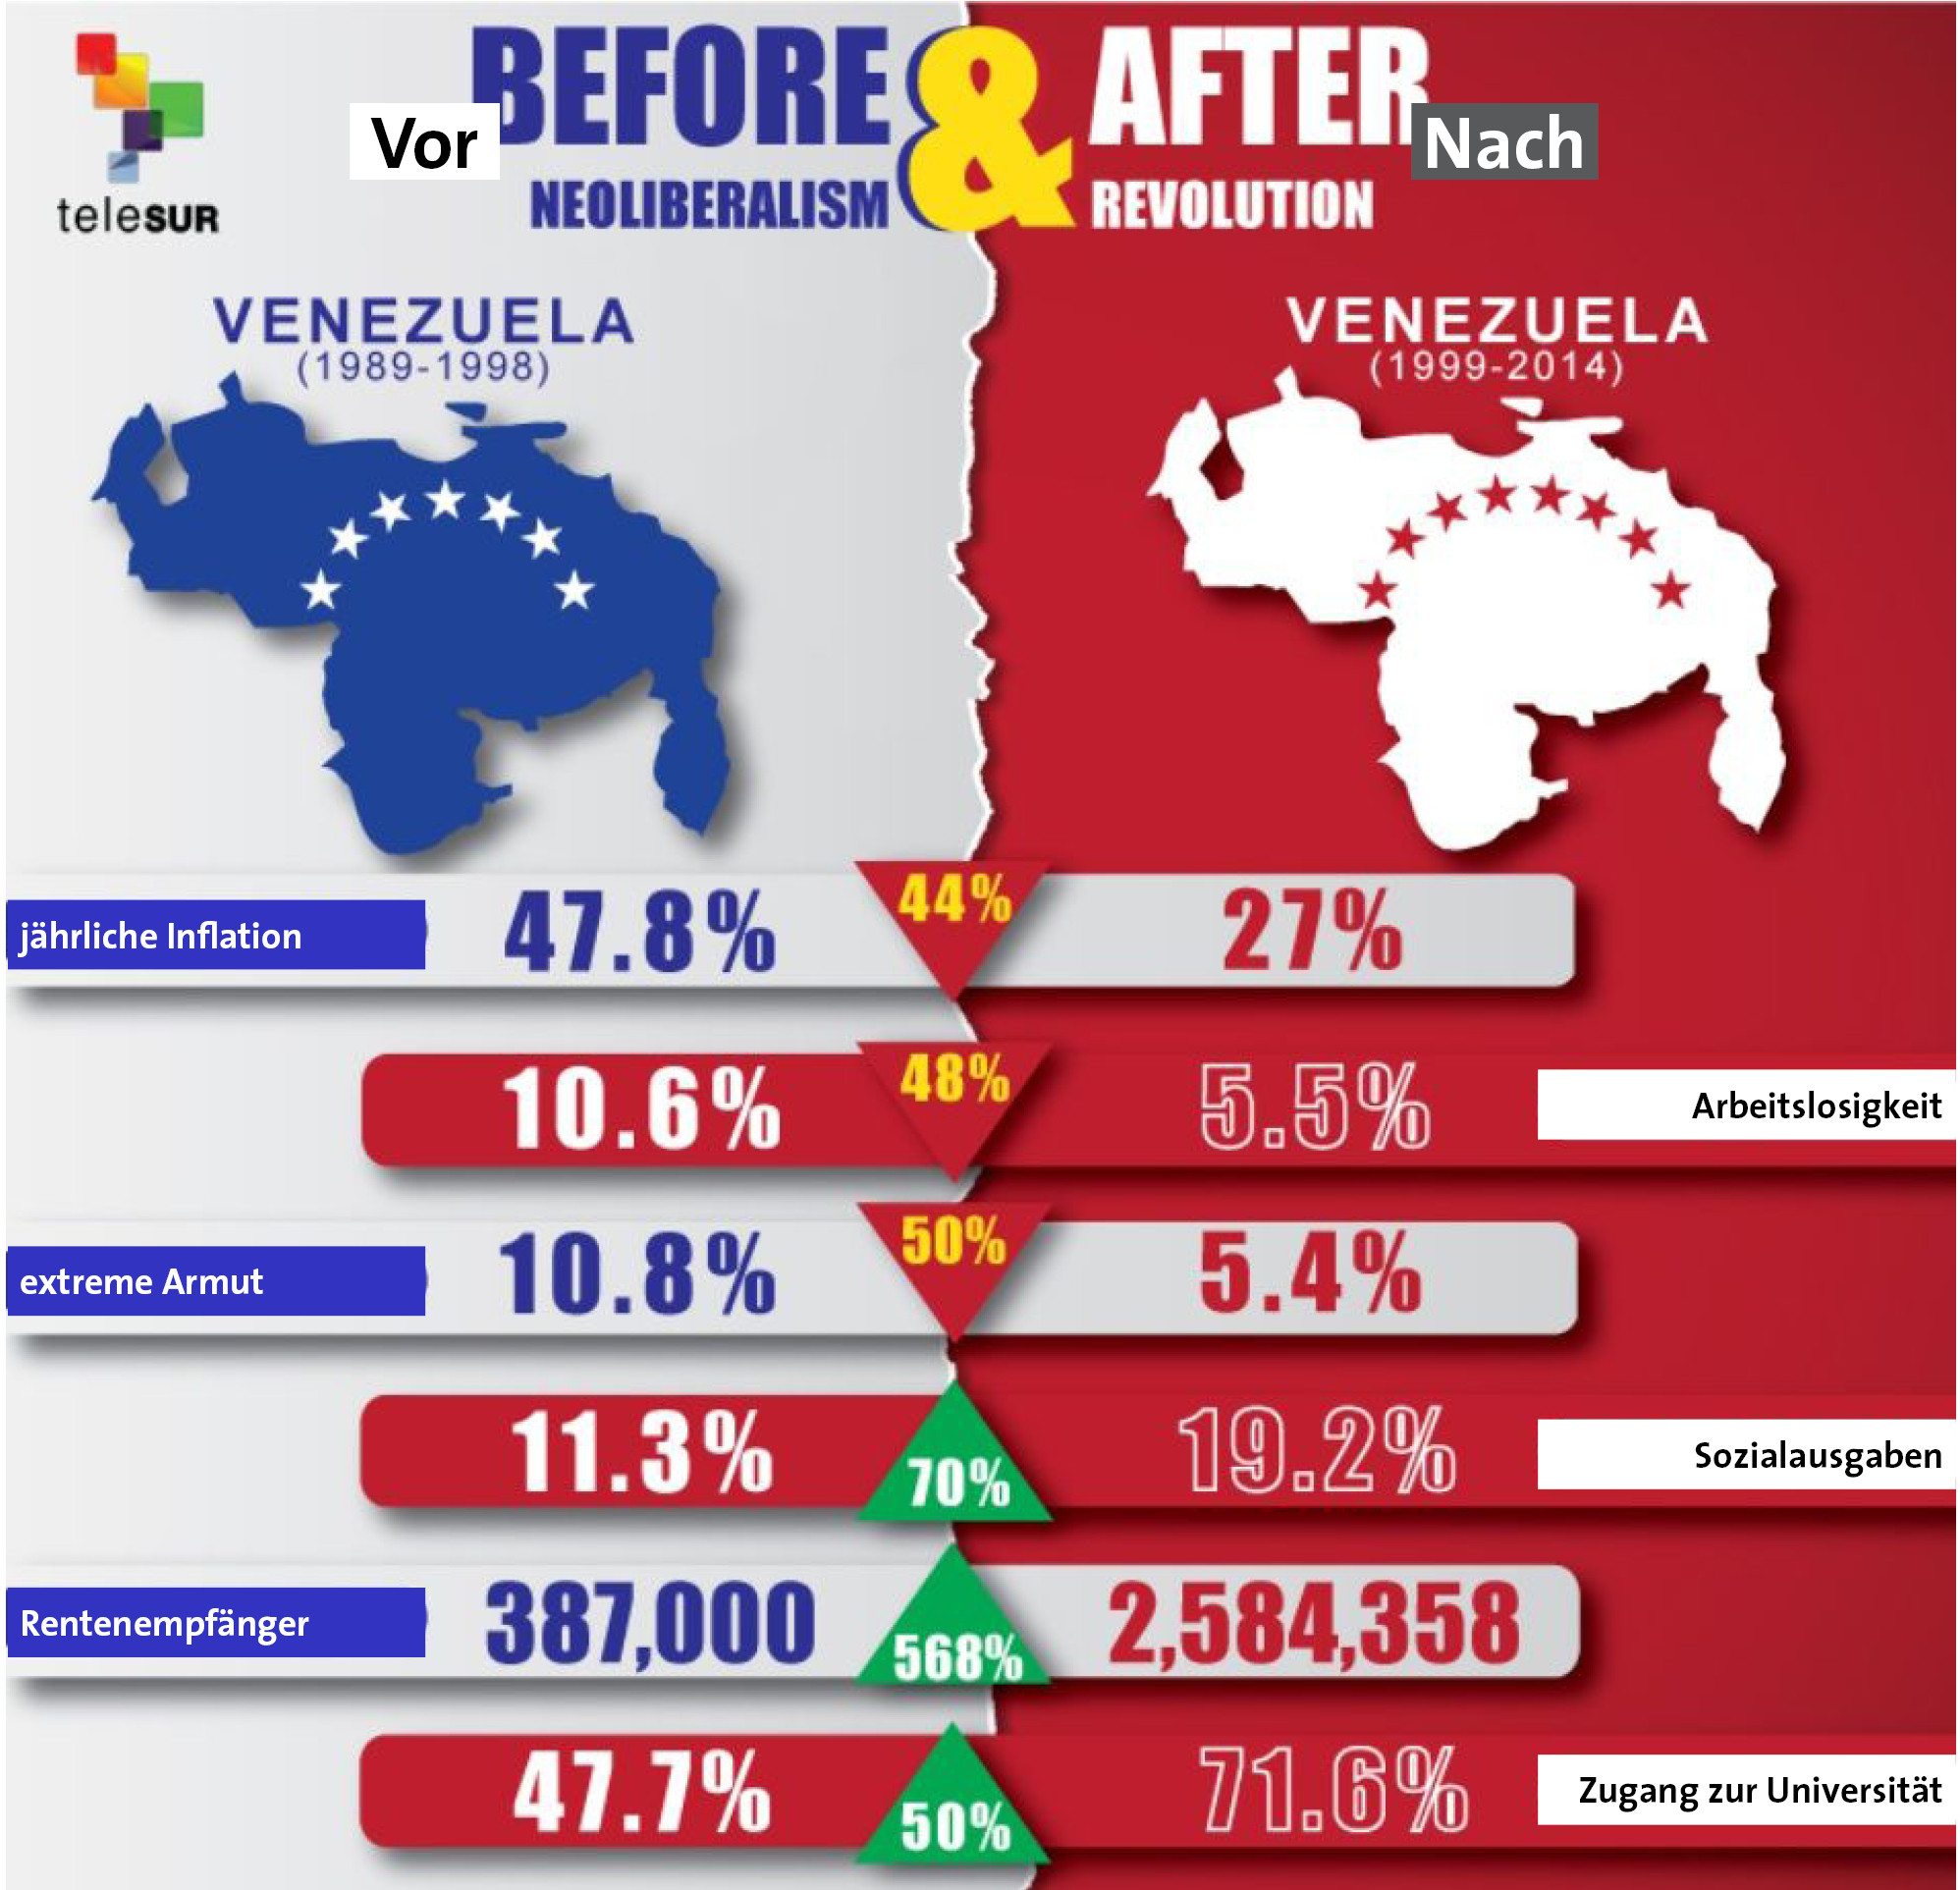 der abgesang auf venezuela 2 - Der Abgesang auf Venezuela - Hintergrund, Politische Auseinandersetzungen, Venezuela - Hintergrund